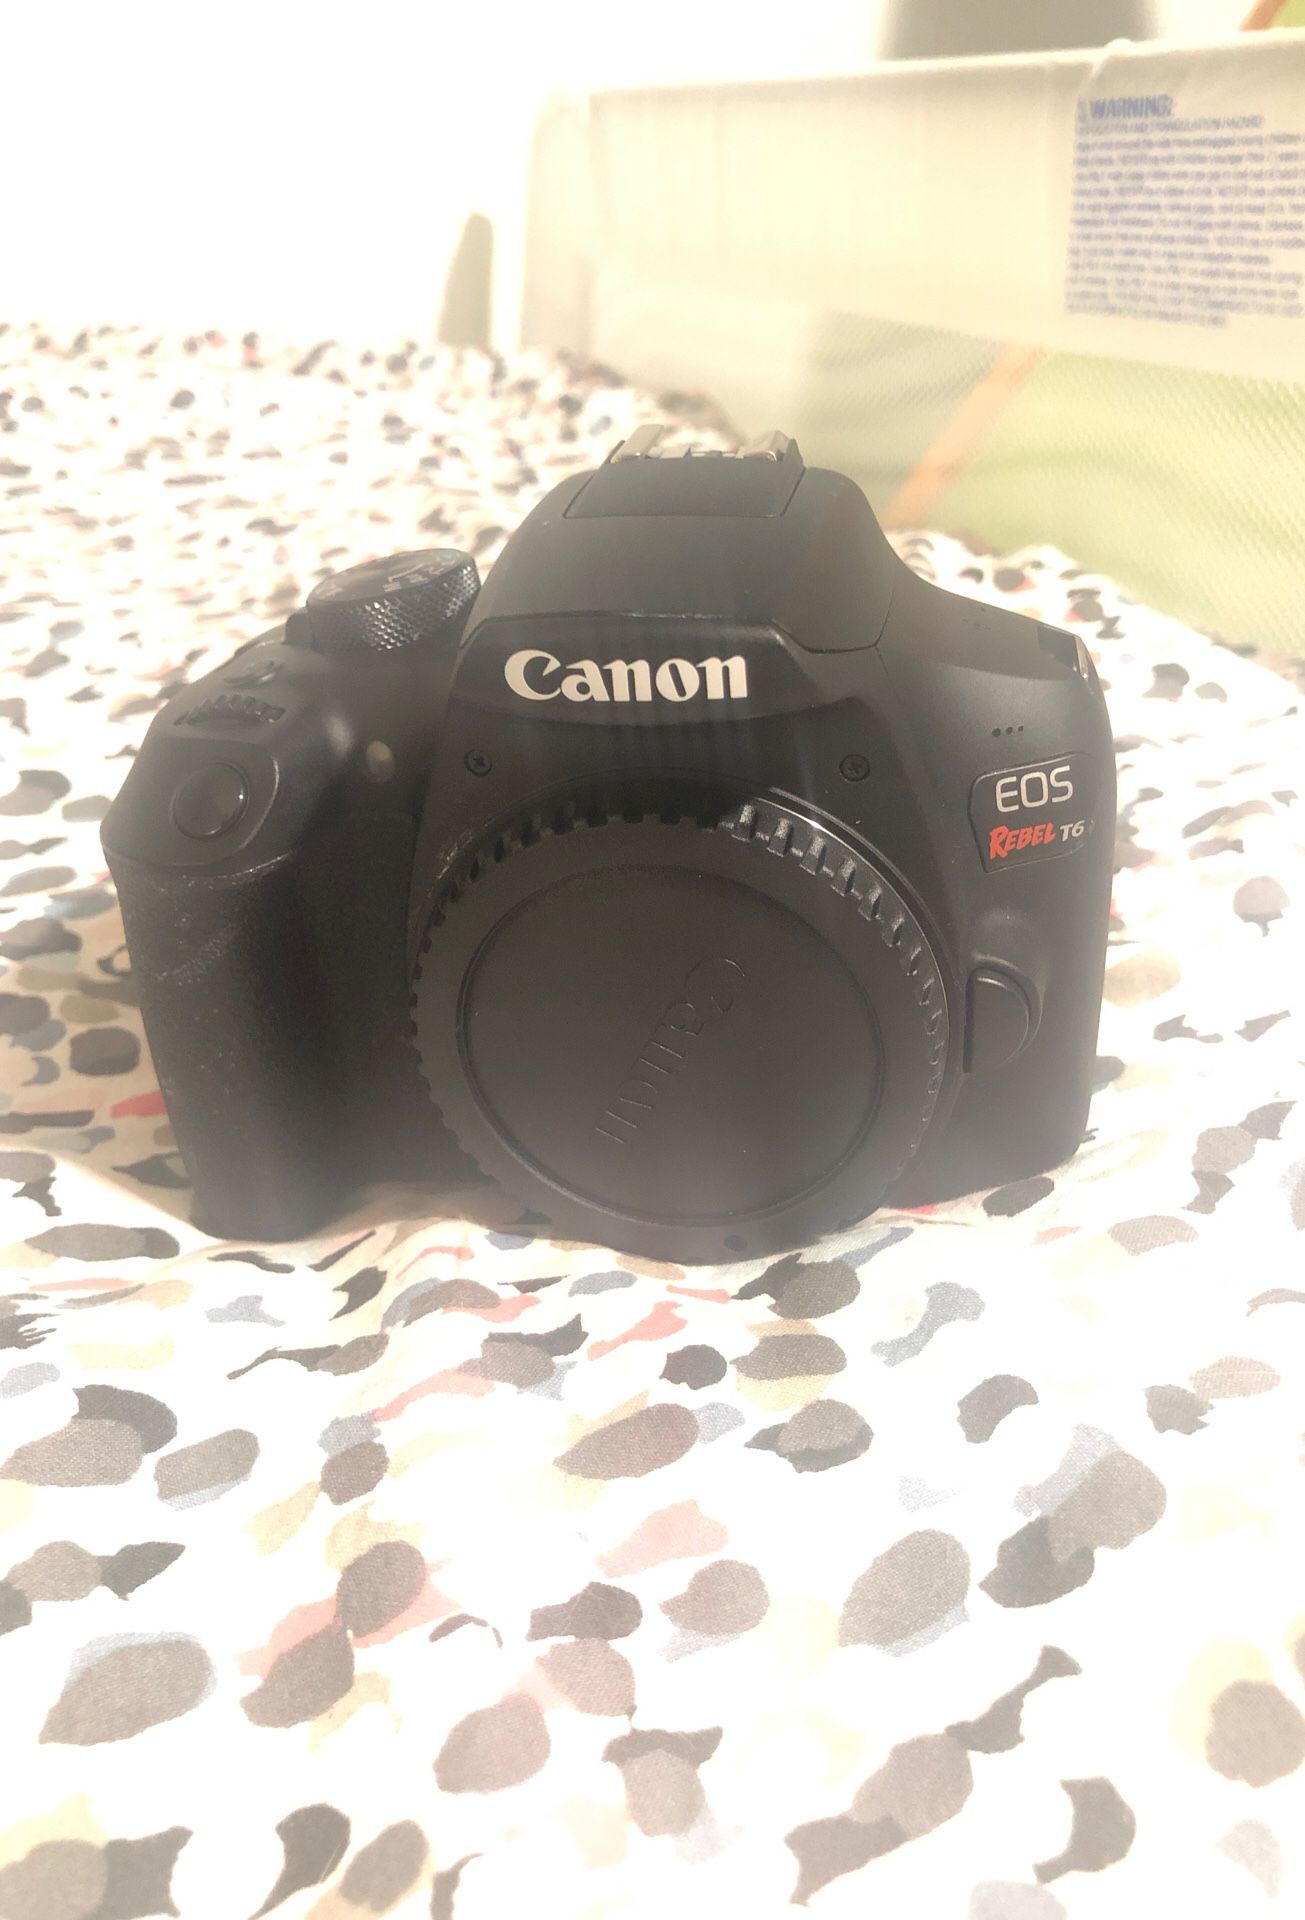 Canon EOS Rebel t6 camera and accessories